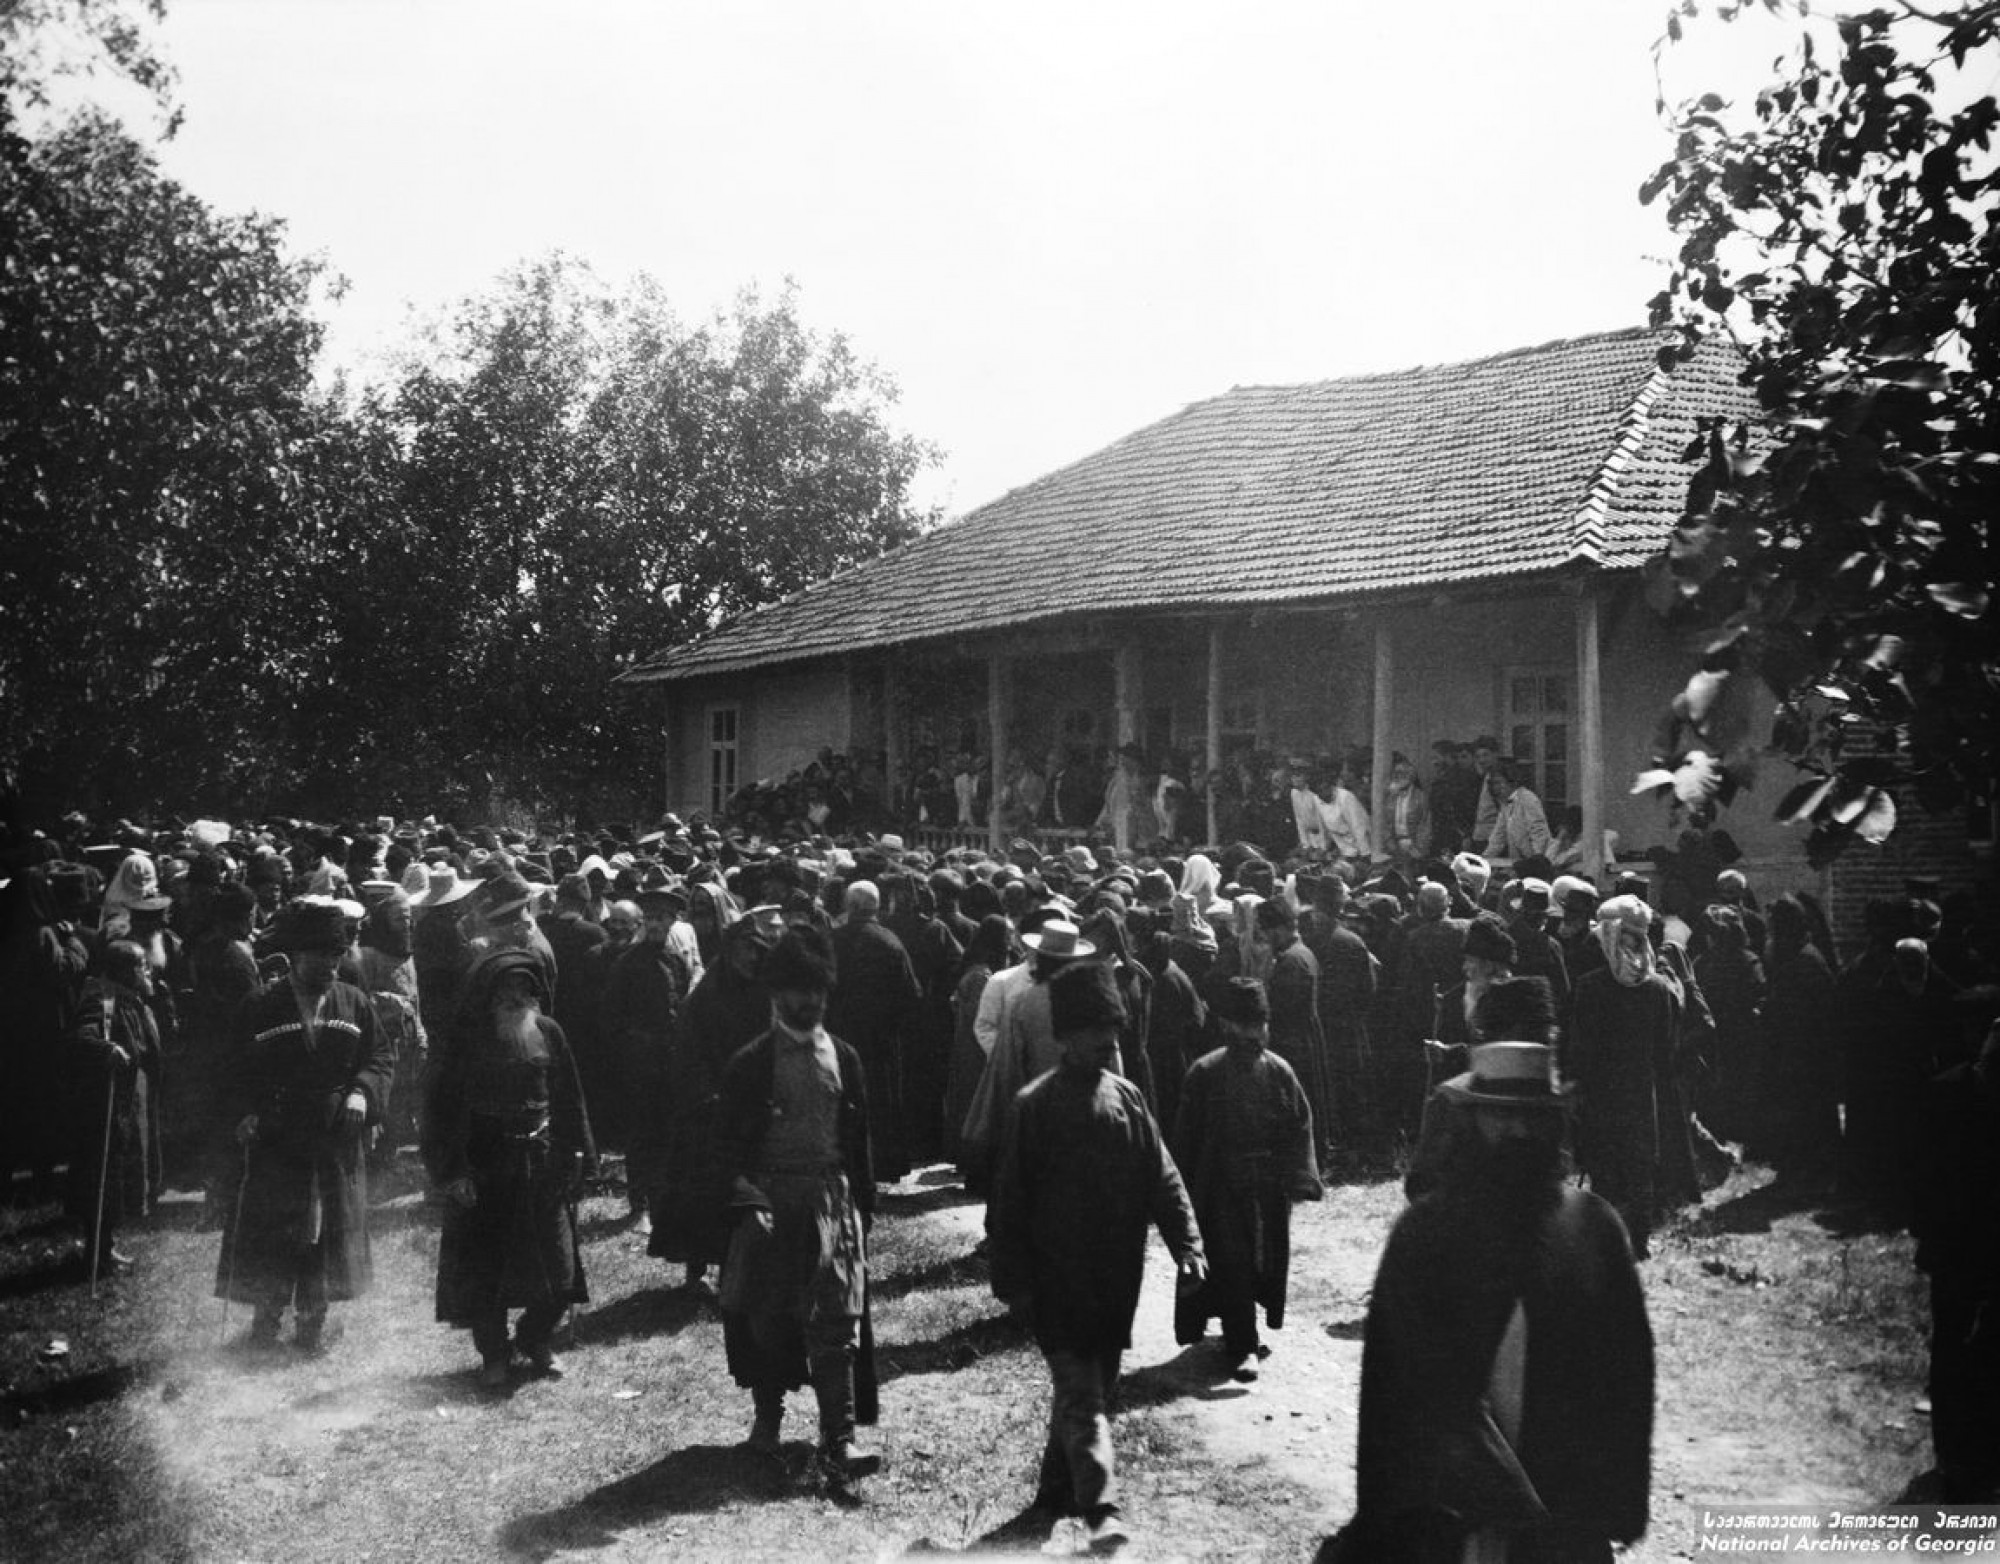 ყრილობა ივანე შარაშიძის სახლის წინ წყლის თაობაზე. <br>
ხონი. <br>
1909. <br>
Meeting held at Ivane Sharashidze’s on water issues. <br>
Khoni, Georgia. 

გვალვა აზარალებდა სოფელ დიდი-ჯიხაიშის მოსახლეობას. ამიტომ საჭირო გახდა სარწყავი არხების გაყვანა. ნიკო ნიკოლაძემ გადაწყვიტა სარწყავი არხის გამოყვანა მდინარე ცხენისწყლიდან, რომლის სათავეც იქნებოდა სოფელი მათხოჯი. არხი გაივლიდა ხონს და სოფლებს: ივანდიდს, გუბს, გოჩა-ჯიხაიშს, იანეთს და შეუერთდებოდა მდინარე გუბისწყალს. ამ საკითხზე მუშაობას ნიკოლაძე 1890-იანი წლების დასაწყისიდან შეუდგა. მან გამონახა ამ საქმით დაინტერესებული პირები, რომლებიც გვერდში ამოუდგნენ და დიდი დახმარება გაუწიეს. ასეთები იყვნენ: ხონში - ცნობილი მოღვაწე ივანე შარაშიძე, კუხში და გუბში - ნესტორ წერეთელი, სოფელ მათხოჯში კი - მელაძეები.